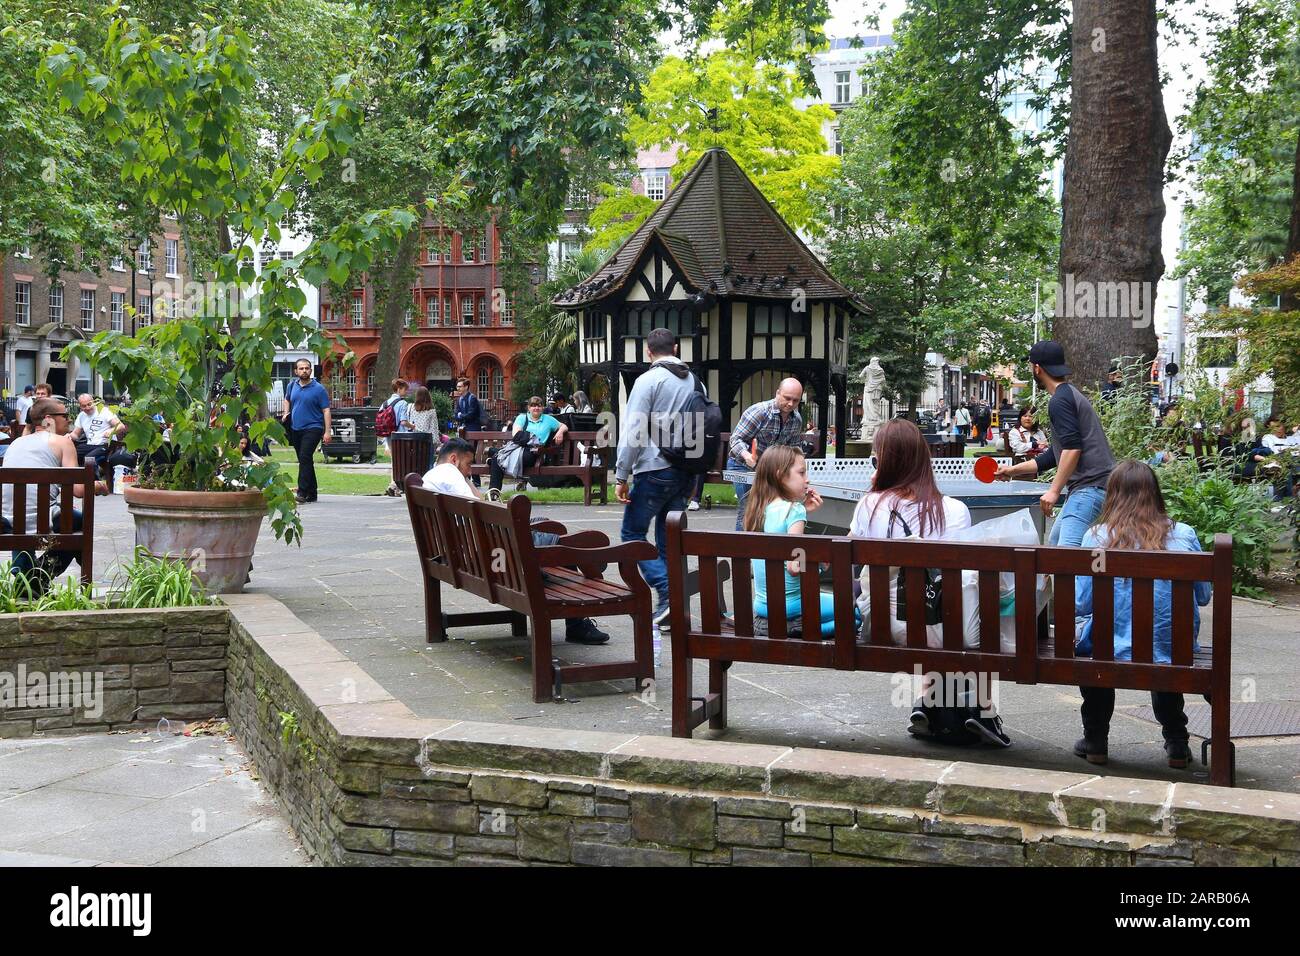 Londra, Regno Unito - 9 LUGLIO 2016: Le persone visitano il parco di Soho Square a Londra, Regno Unito. Londra è la città più popolosa del Regno Unito con 13 milioni di persone vivide Foto Stock